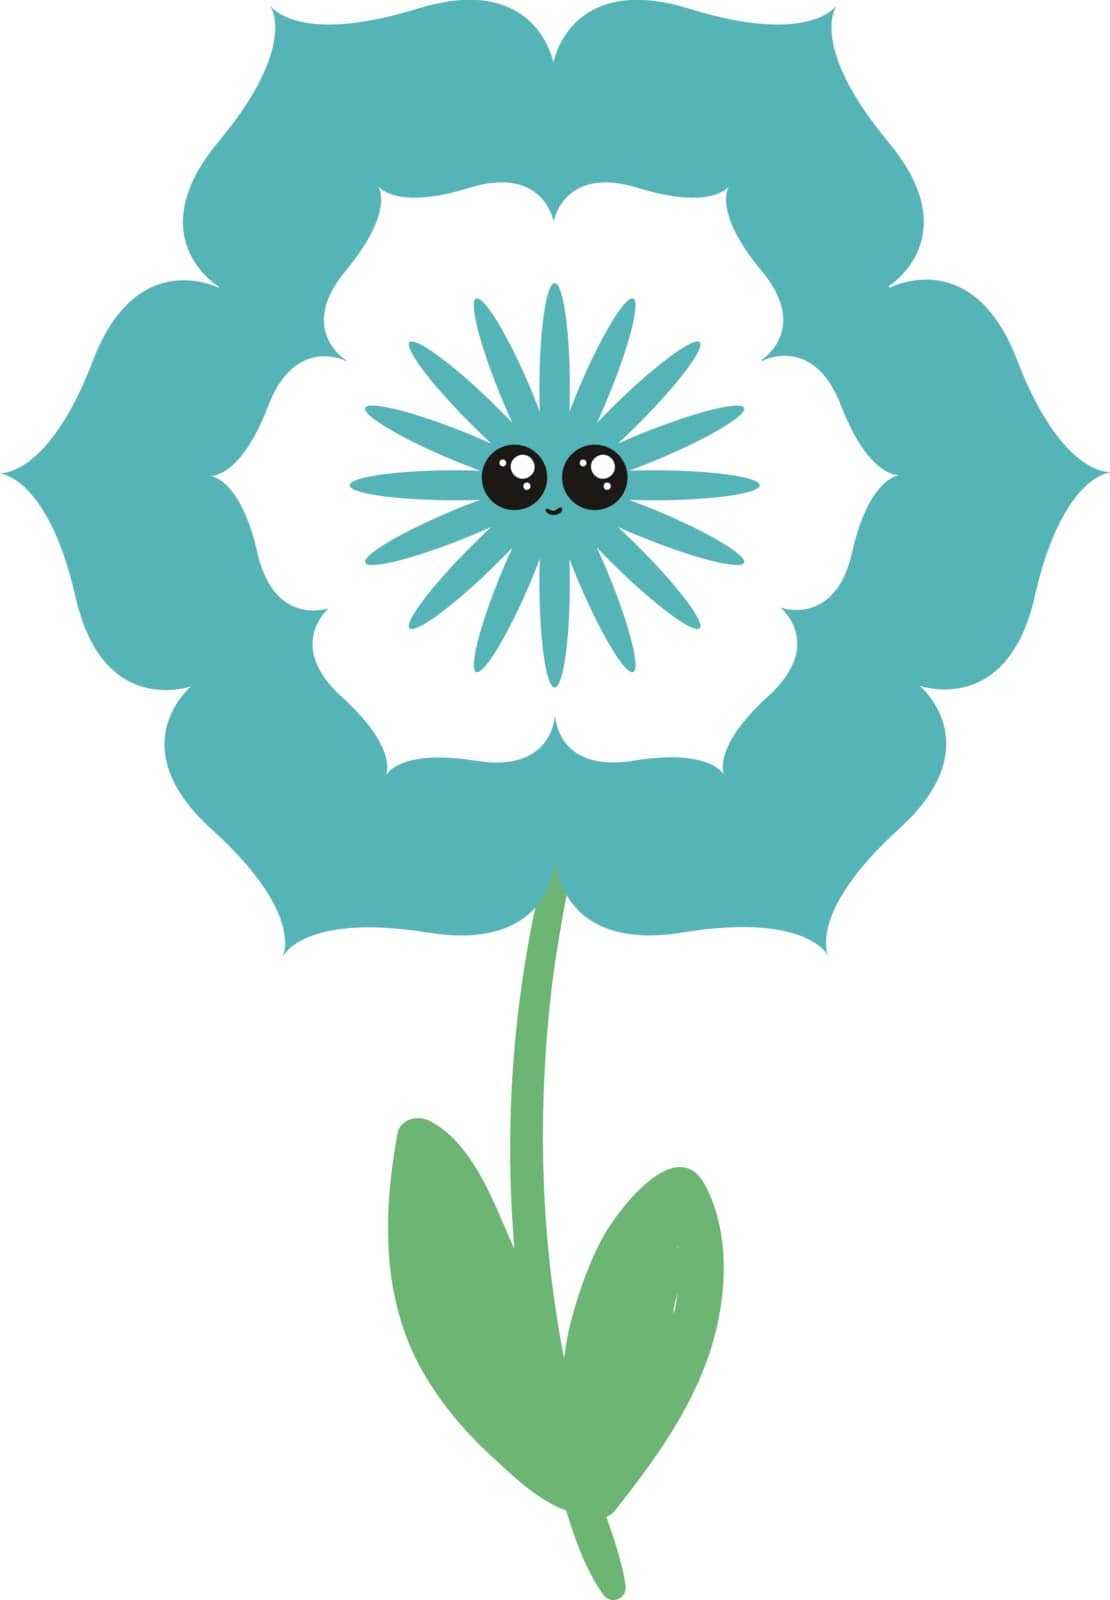 Blue flower, illustration, vector on white background. by Morphart